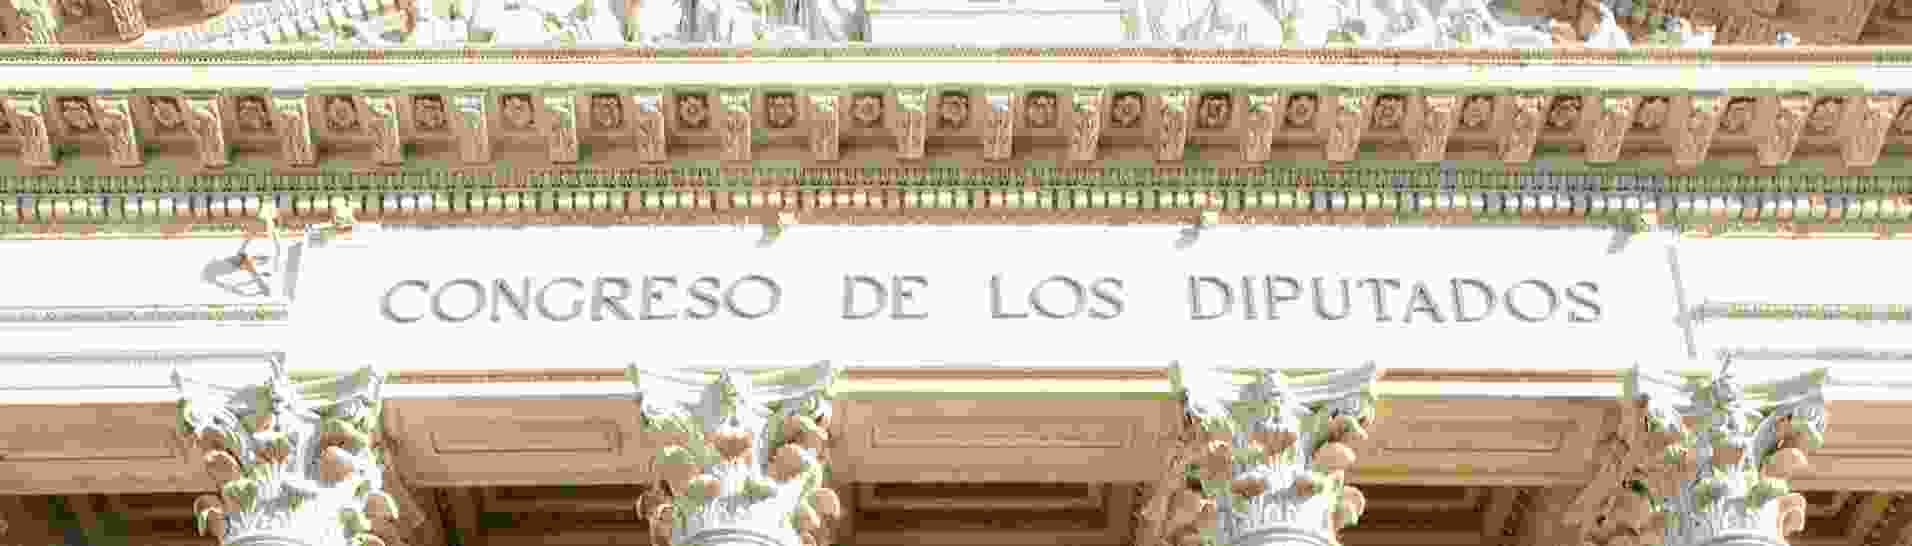 El diseño español vive una jornada histórica en el Congreso de los Diputados